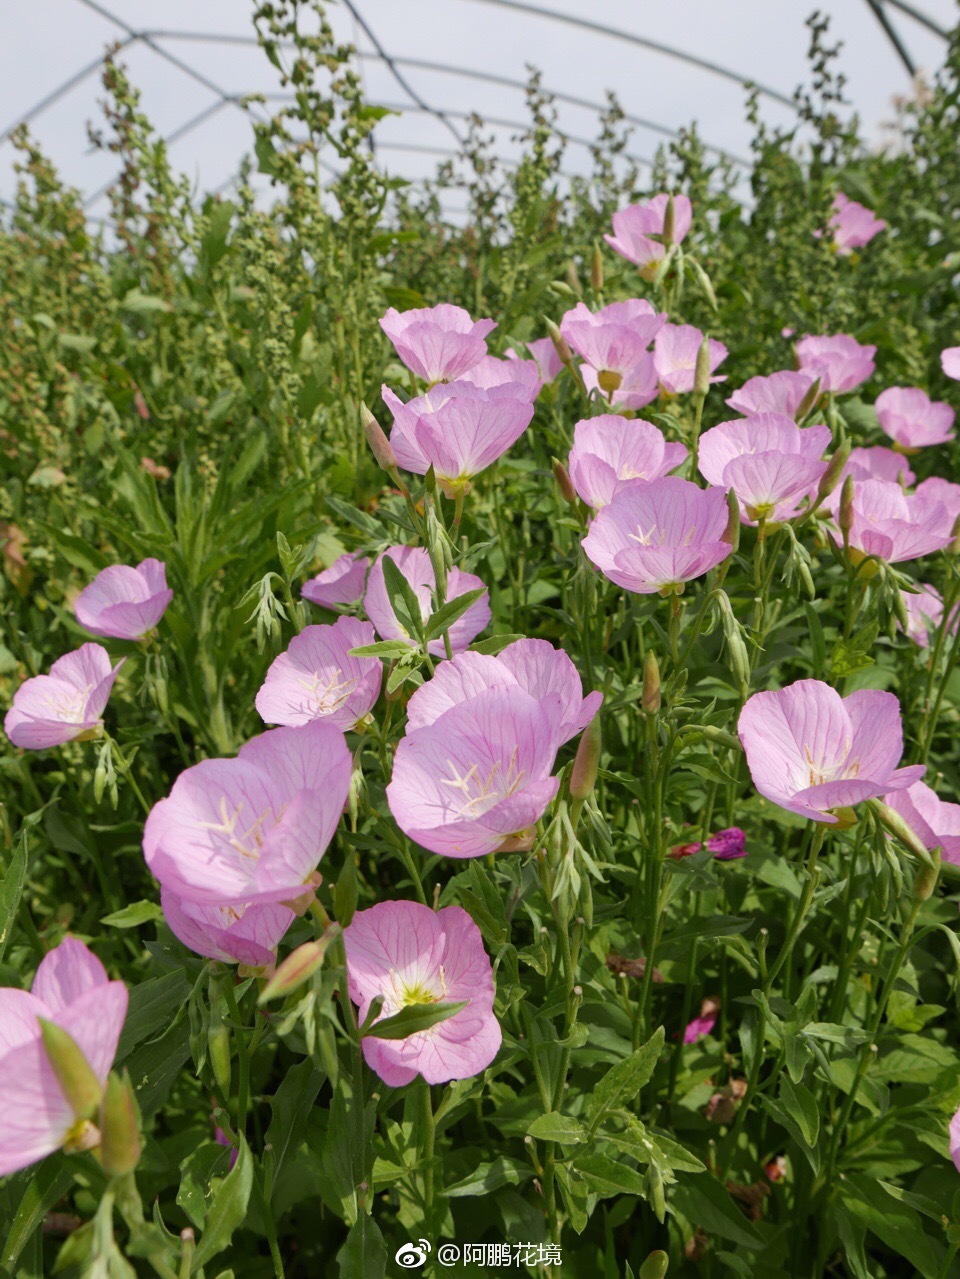 美丽月见草,排除蔓延,真的是一种完美的粉色多年生花境植物材料